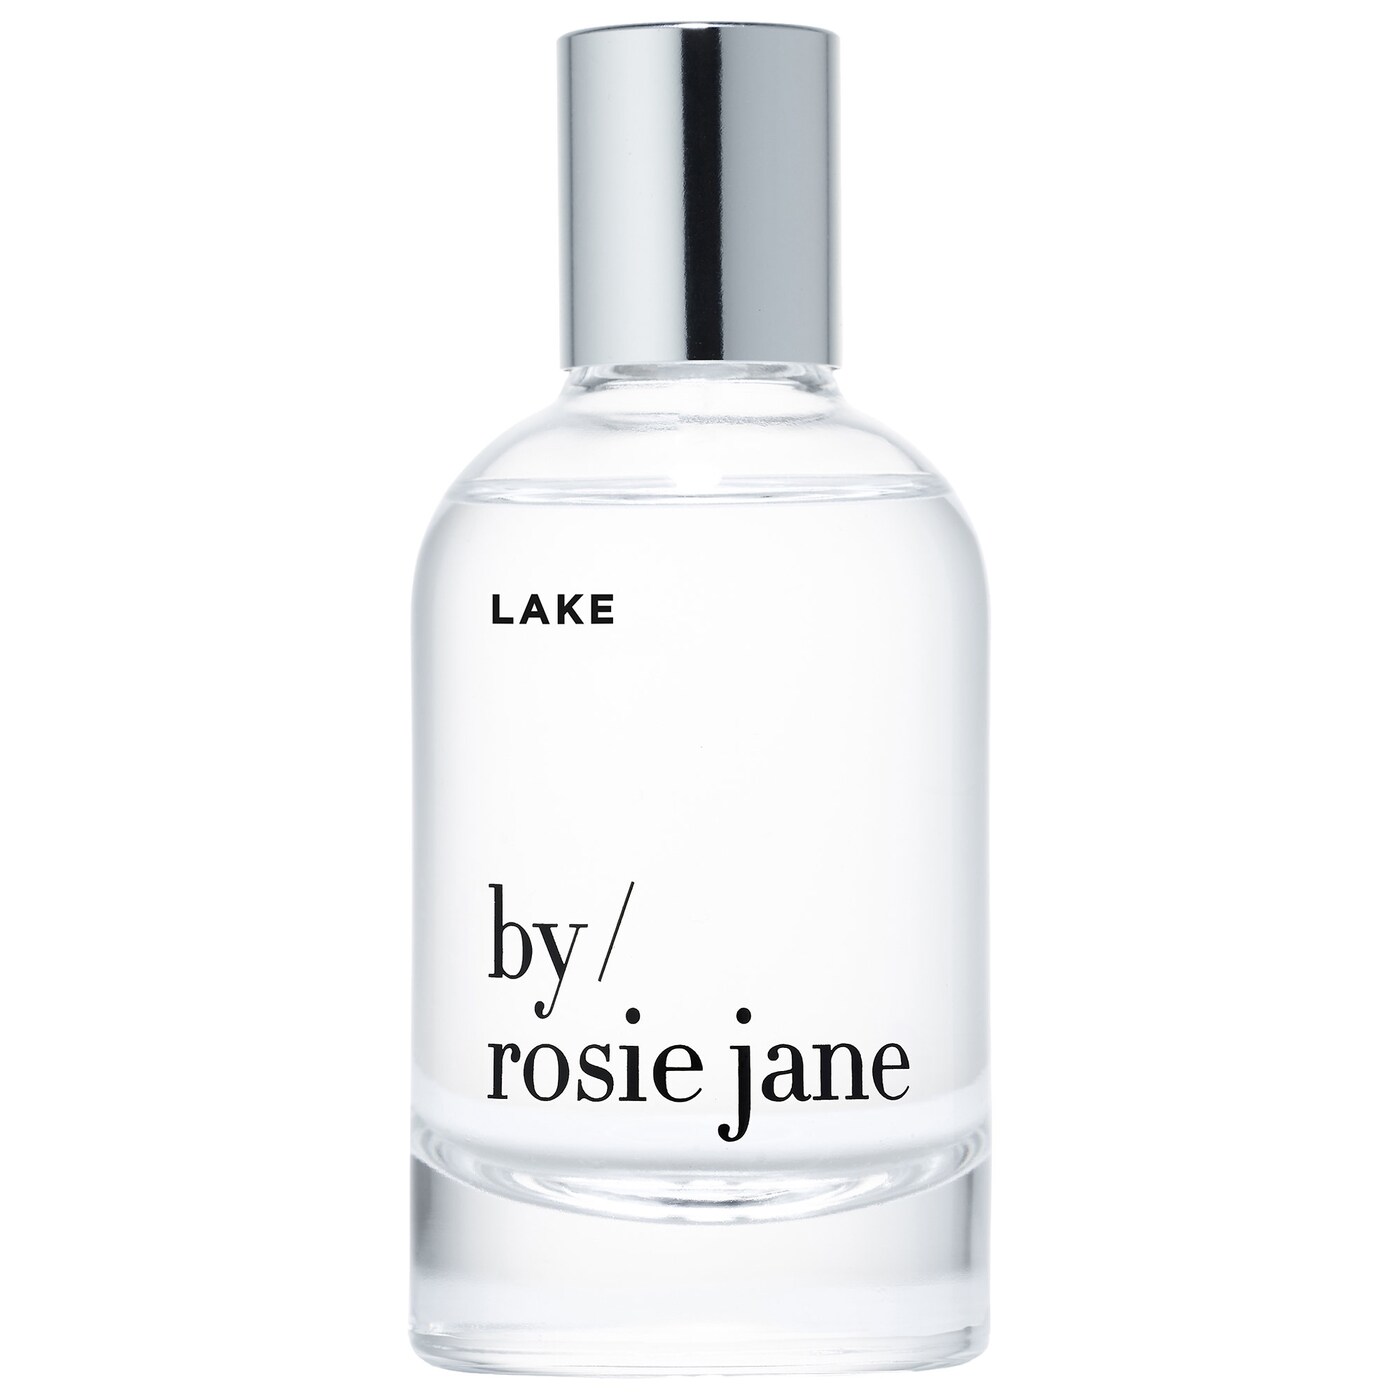 Lake by Rosie Jane parfem, blagdanski miris, na bijeloj pozadini